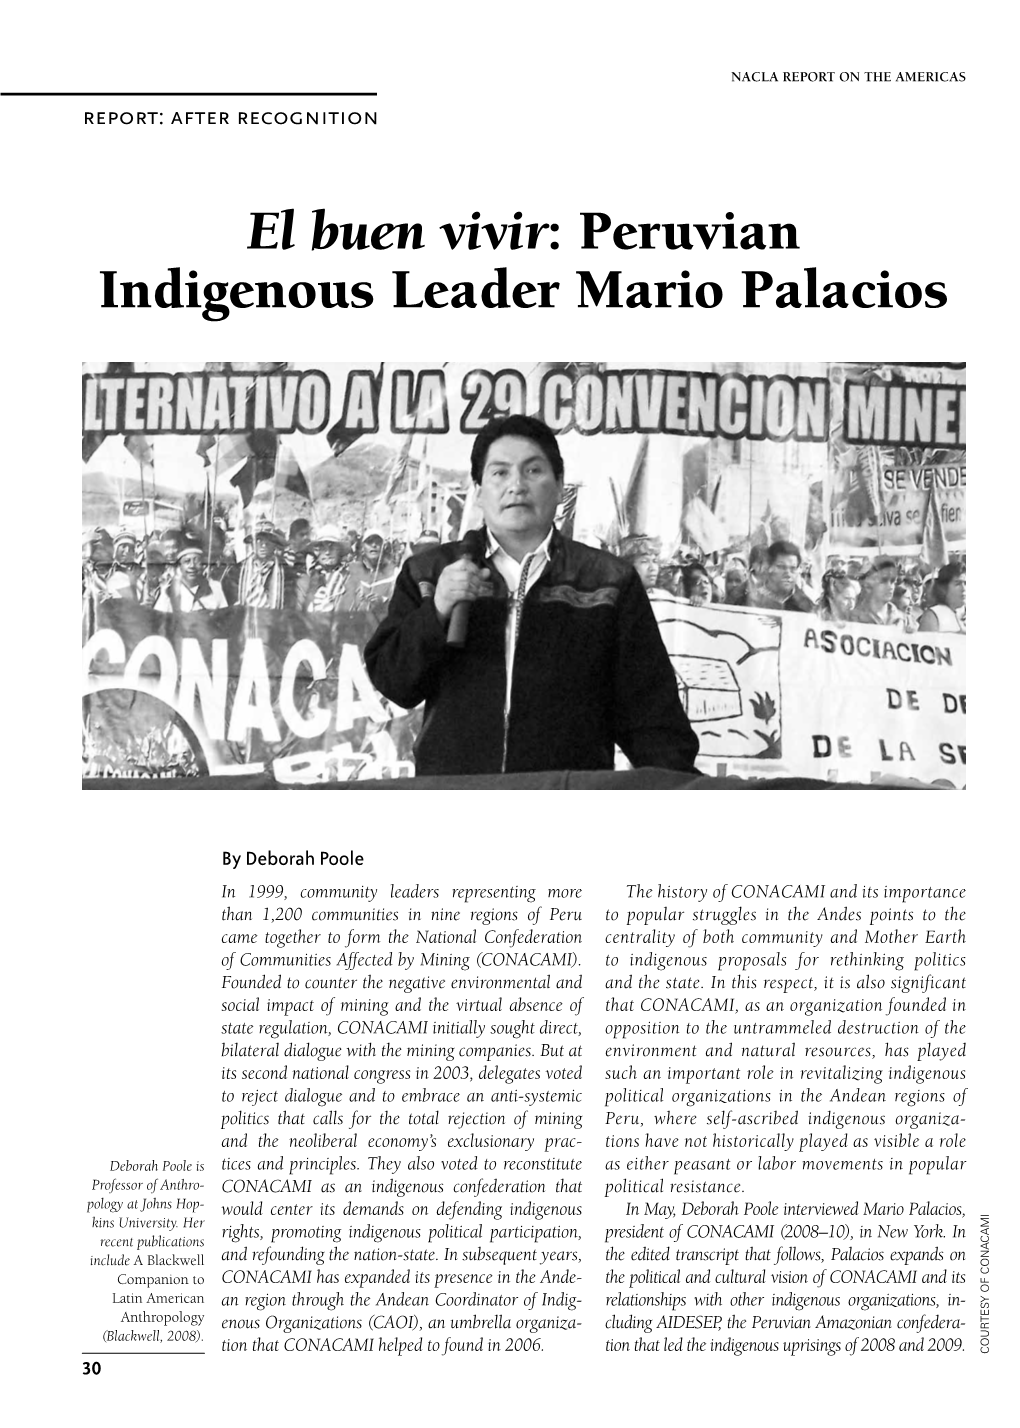 Peruvian Indigenous Leader Mario Palacios